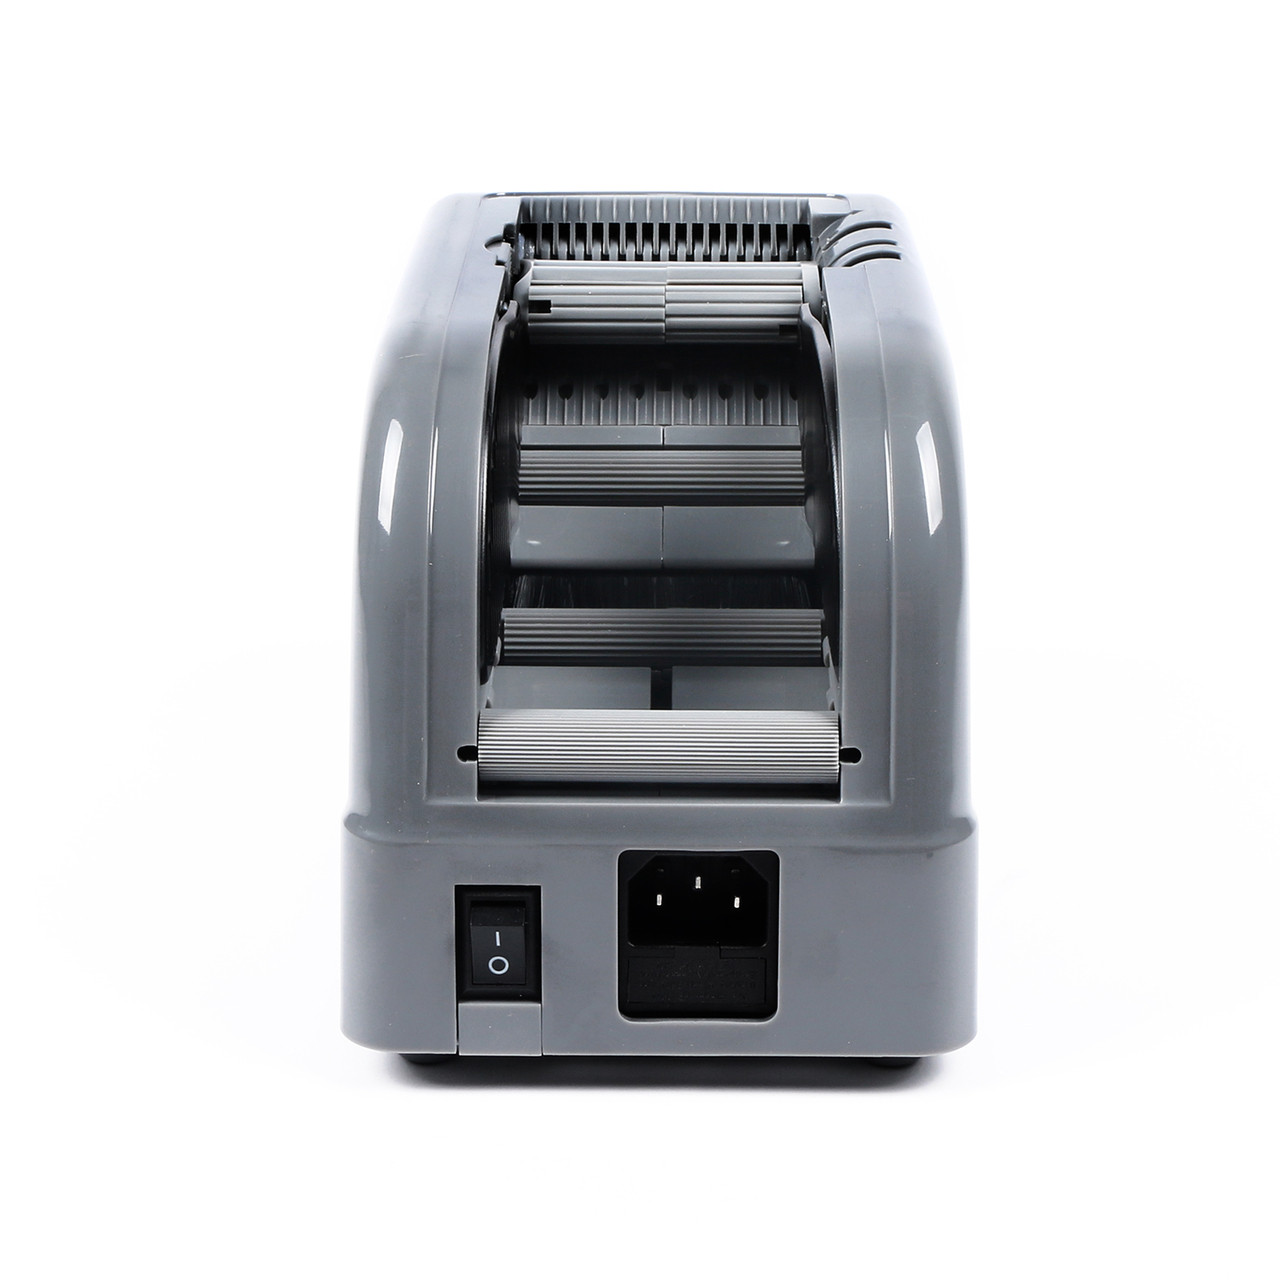 ZCUT-9 60mm Breite Automatische Tape Dispenser Band Maschine doppelseitigem  Klebeband Schneiden Maschine BEI-60 Effiziente cutter